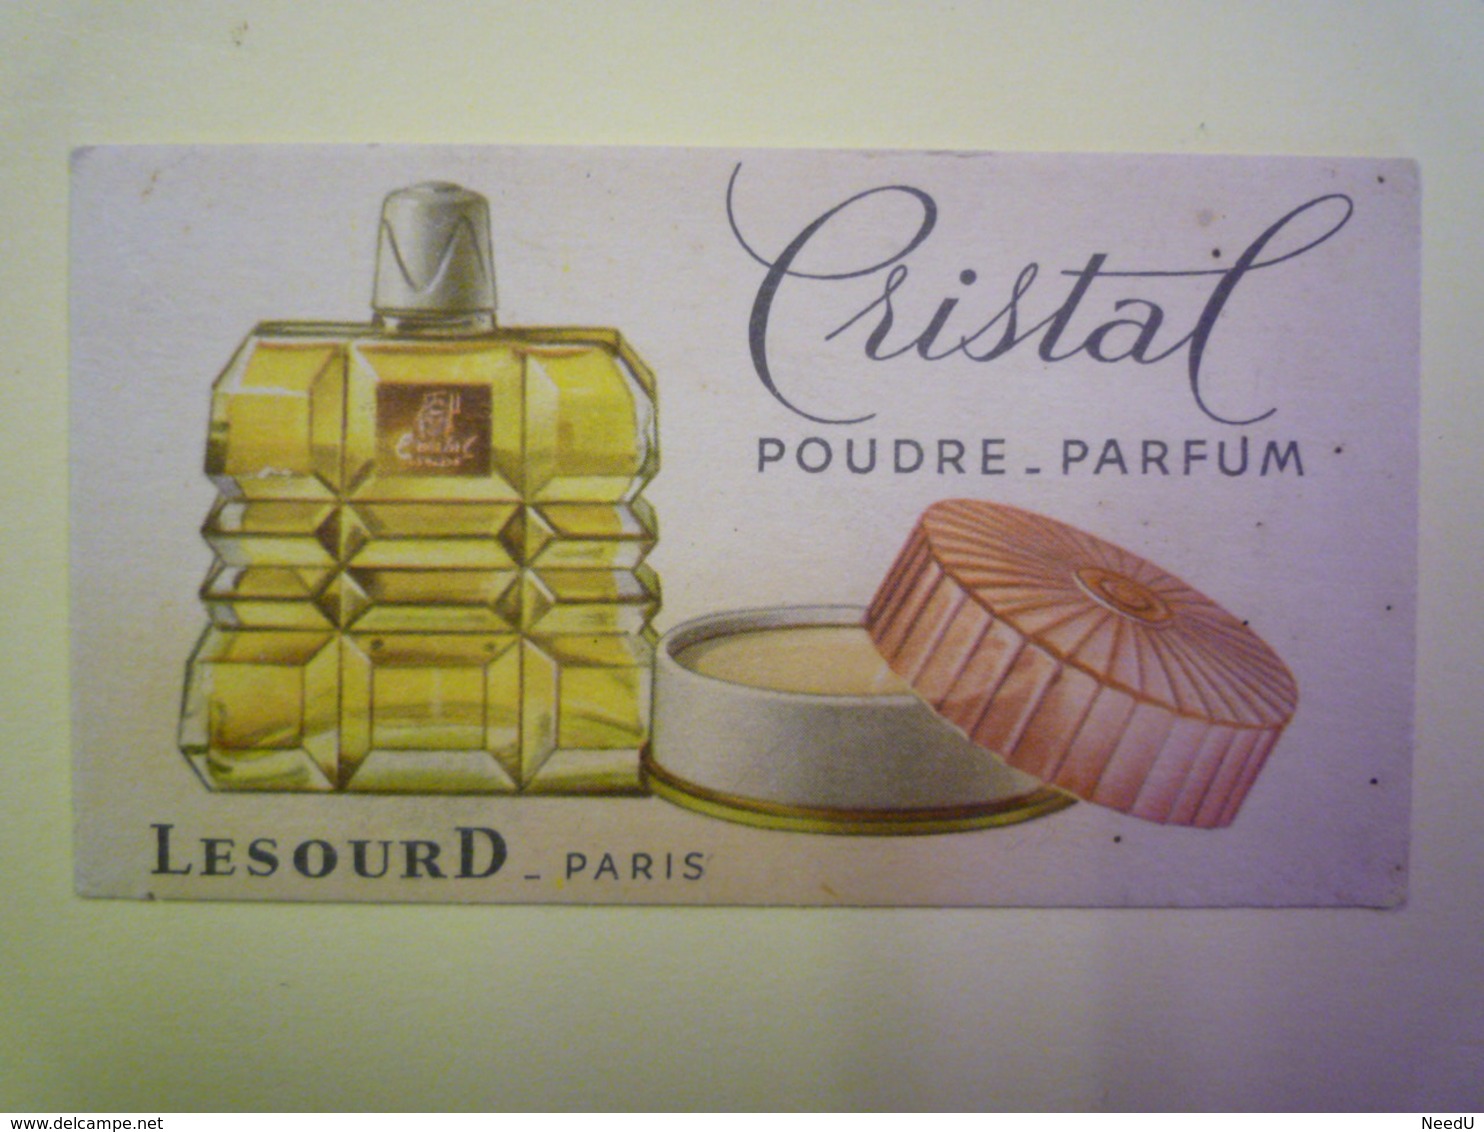 GP 2019 - 1267  CARTE Parfumée  "CRISTAL"  Poudre - Parfum  (LESOURD  -  Paris)   XXX - Antiguas (hasta 1960)